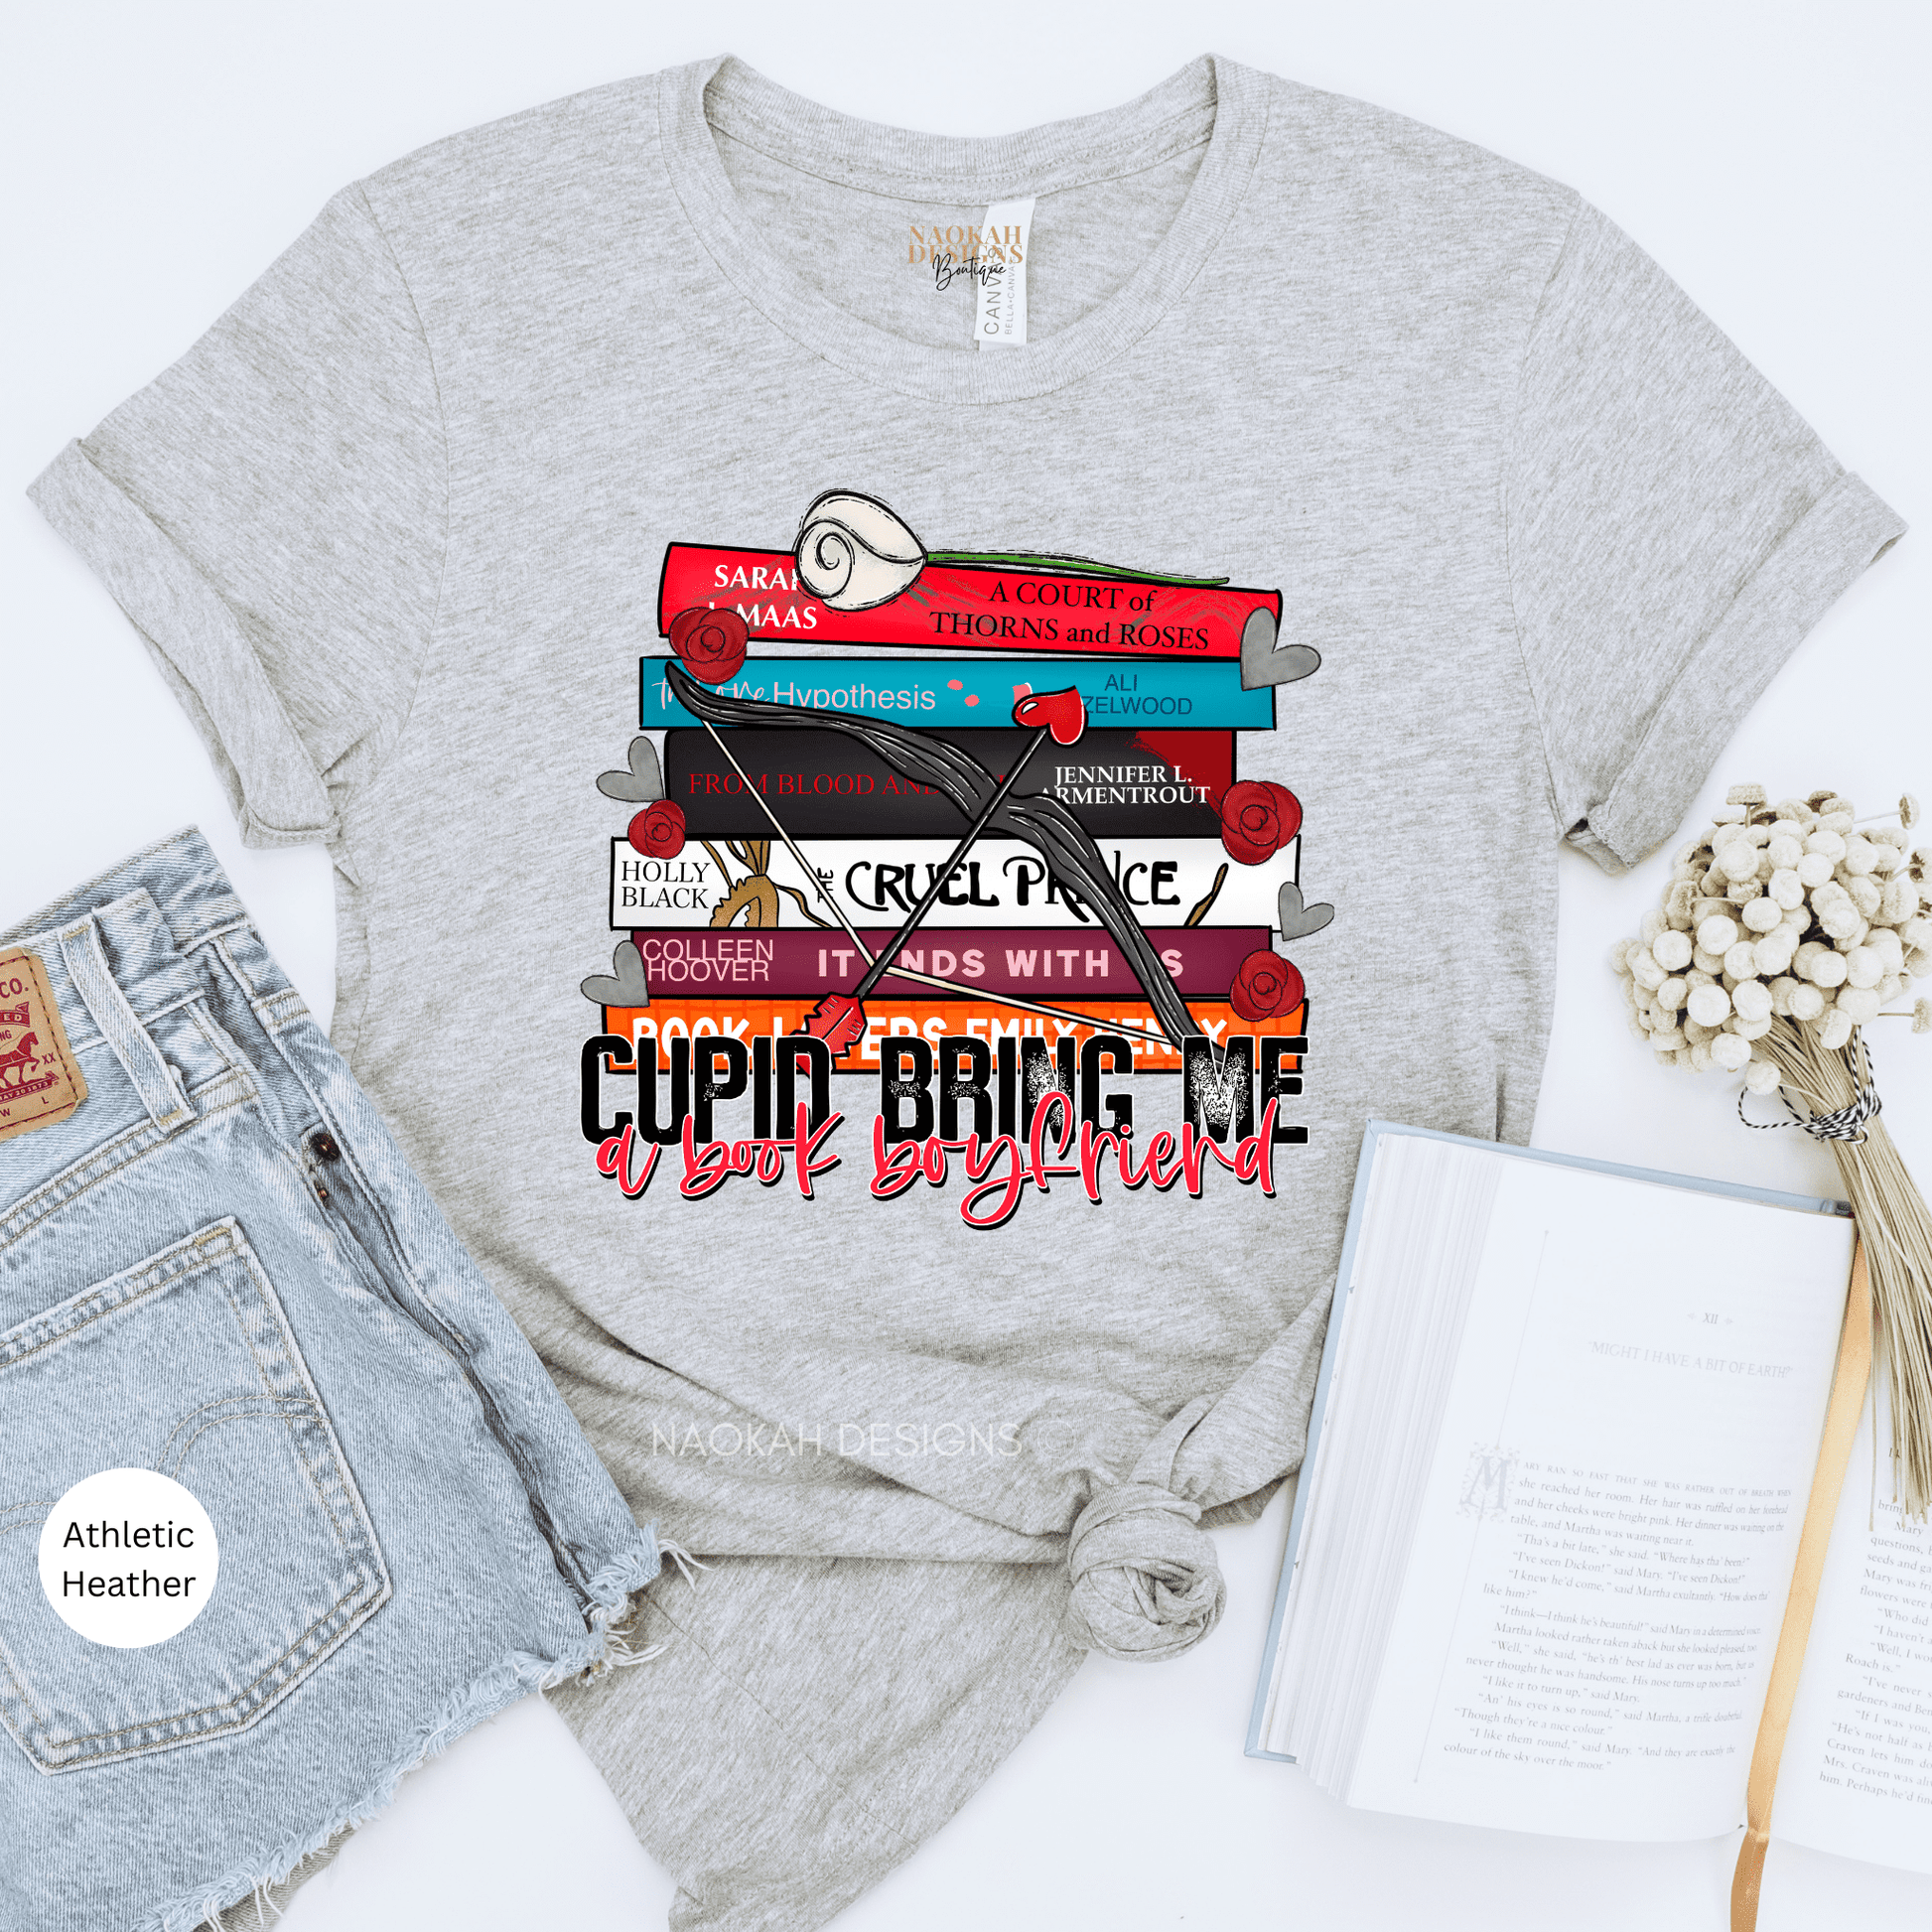 Cupid Bring Me A Book Boyfriend Shirt, Book Lover Shirt, Literary Shirt, Cupid Book Shirt, Valentine Book Shirt, Bookish Shirt, Book Lover, Fiction Addiction, Book Shirt, Bookworm Shirt, Librarian Shirt, Book Nerd, Smut Club Shirt, Dirty Book Club Shirt